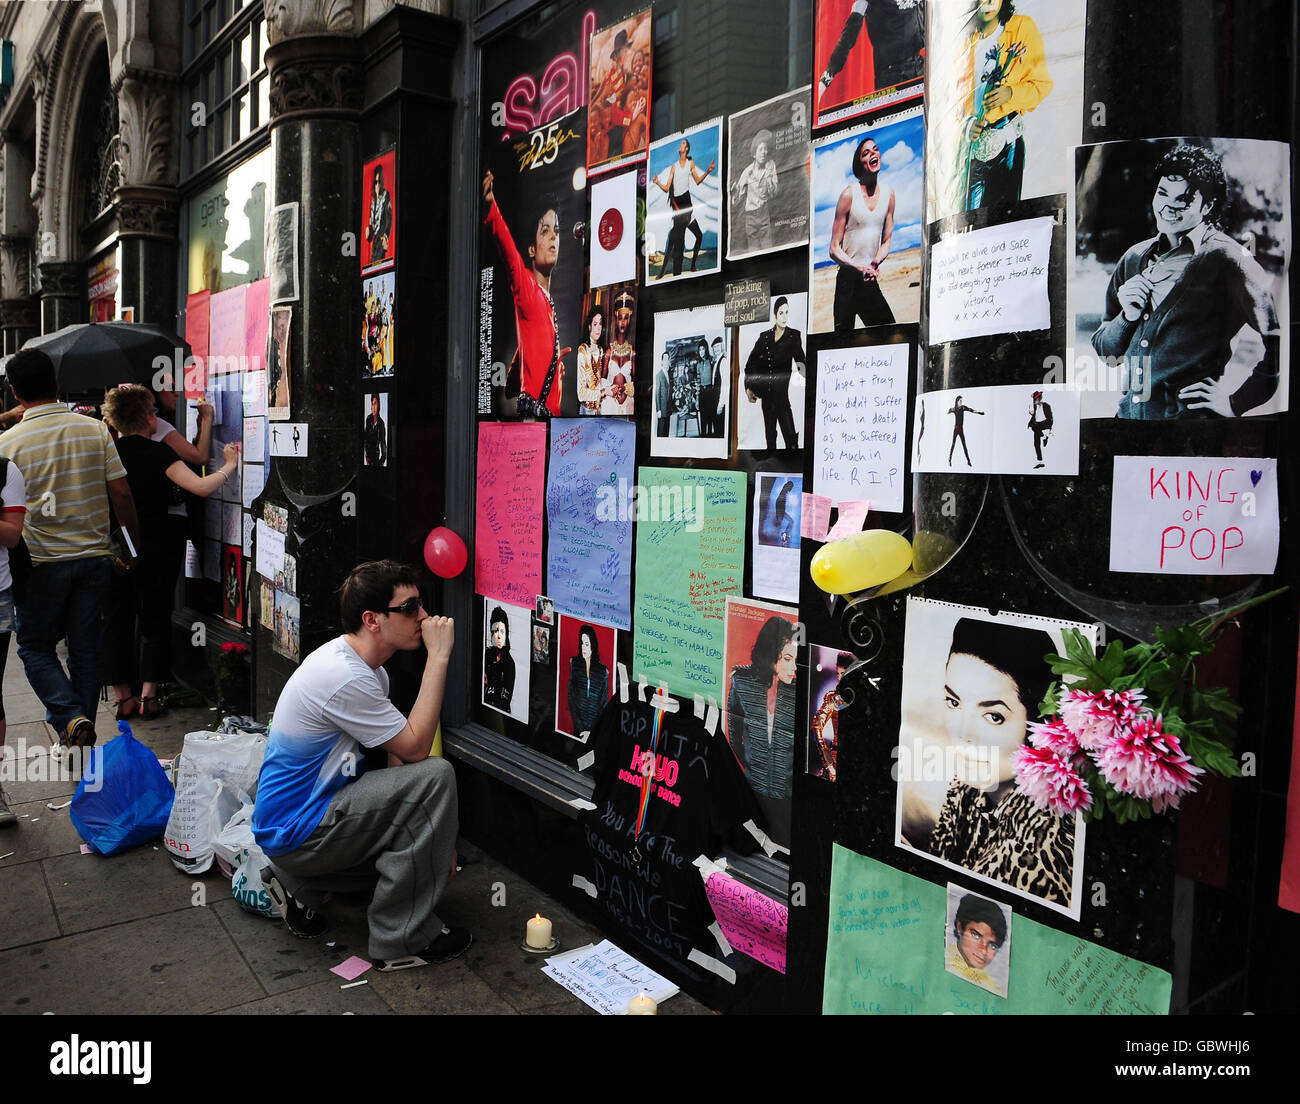 Michael Jackson stirbt im Alter von 50 Jahren. Fans schauen vor einem HMV-Laden am Leicester Square, London, nach einem Schrein von Popstar Michael Jackson. Stockfoto